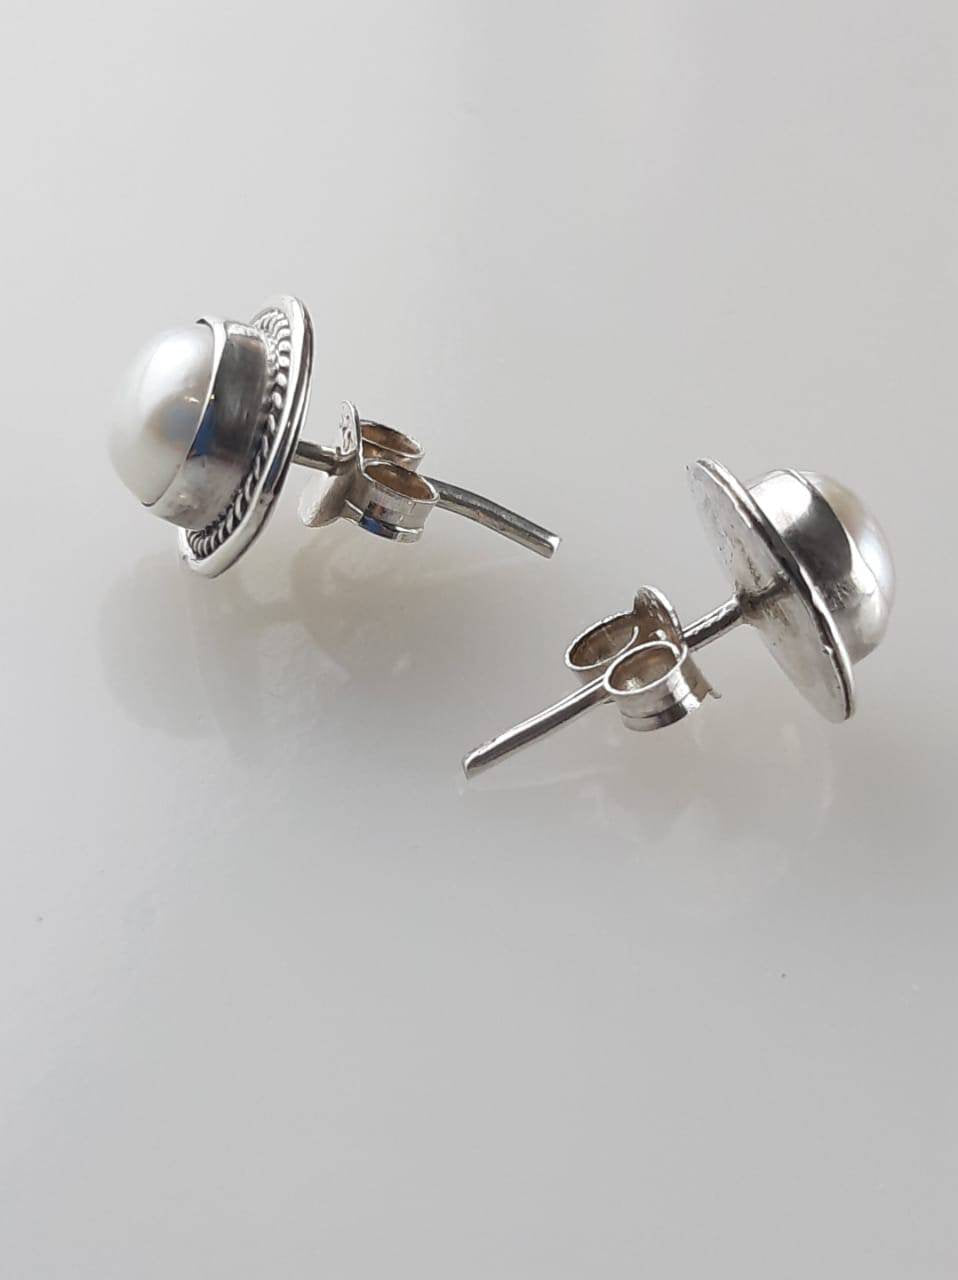 pearl studs, white pearl stud earrings, moon studs, silver stud earrings, lightly oxidized silver pearl earrings, oxidized studs, Australia, Zorbajewellers